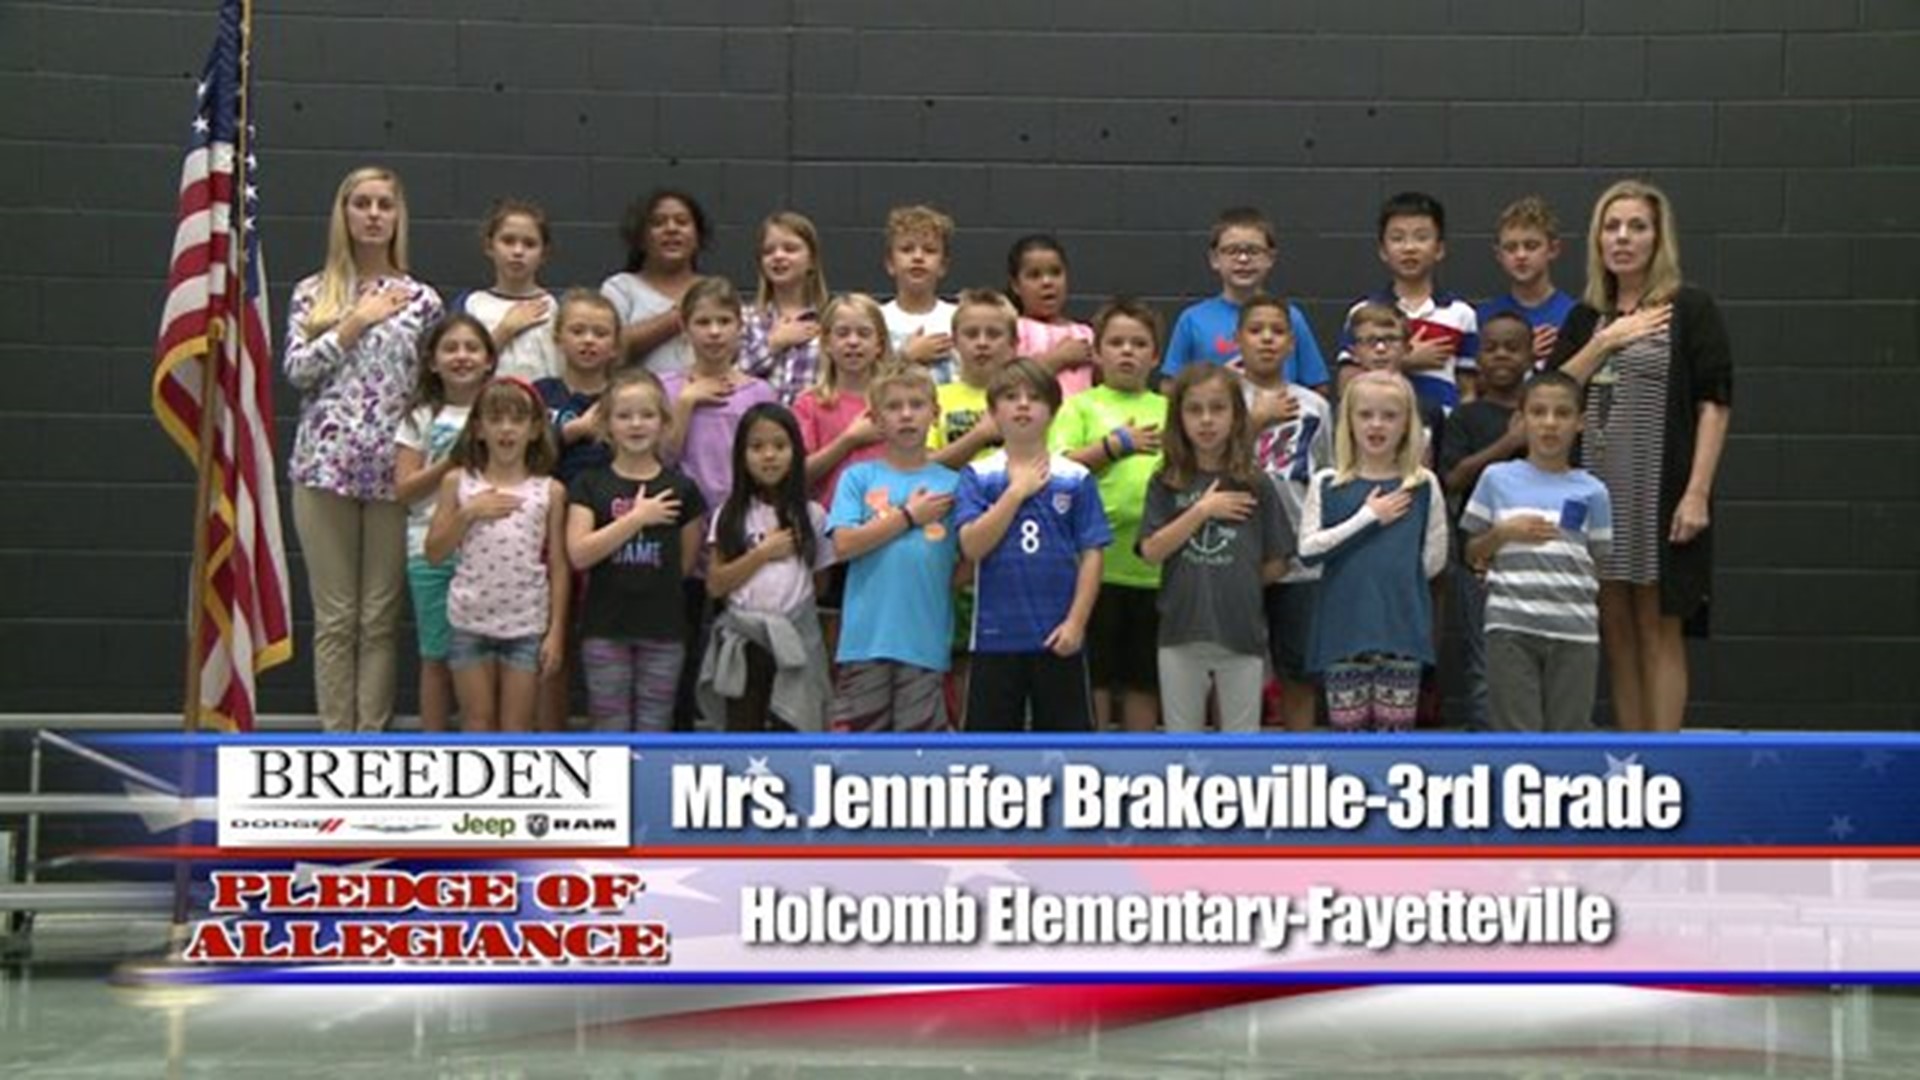 Holcomb Elementary, Fayetteville - Mrs. Jennifer Brakeville - 3rd Grade